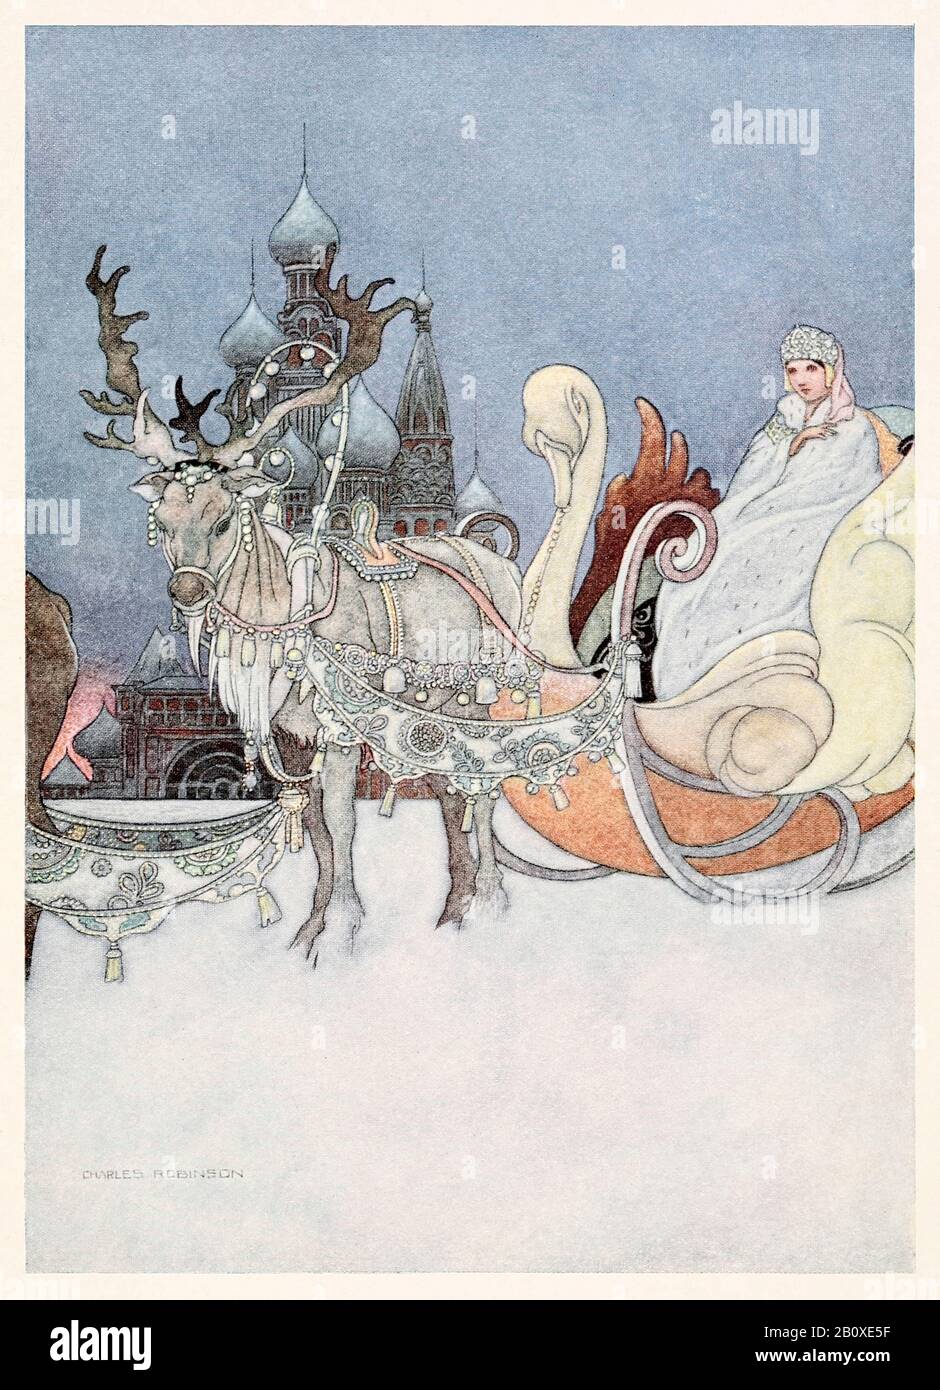 "Die russische Prinzessin" aus 'The Remarkable Rocket' in The Happy Prince and Other Tales von Oscar Wilde (1854-1900) illustriert von Charles Robinson (1870-1937). Weitere Informationen finden Sie weiter unten. Stockfoto